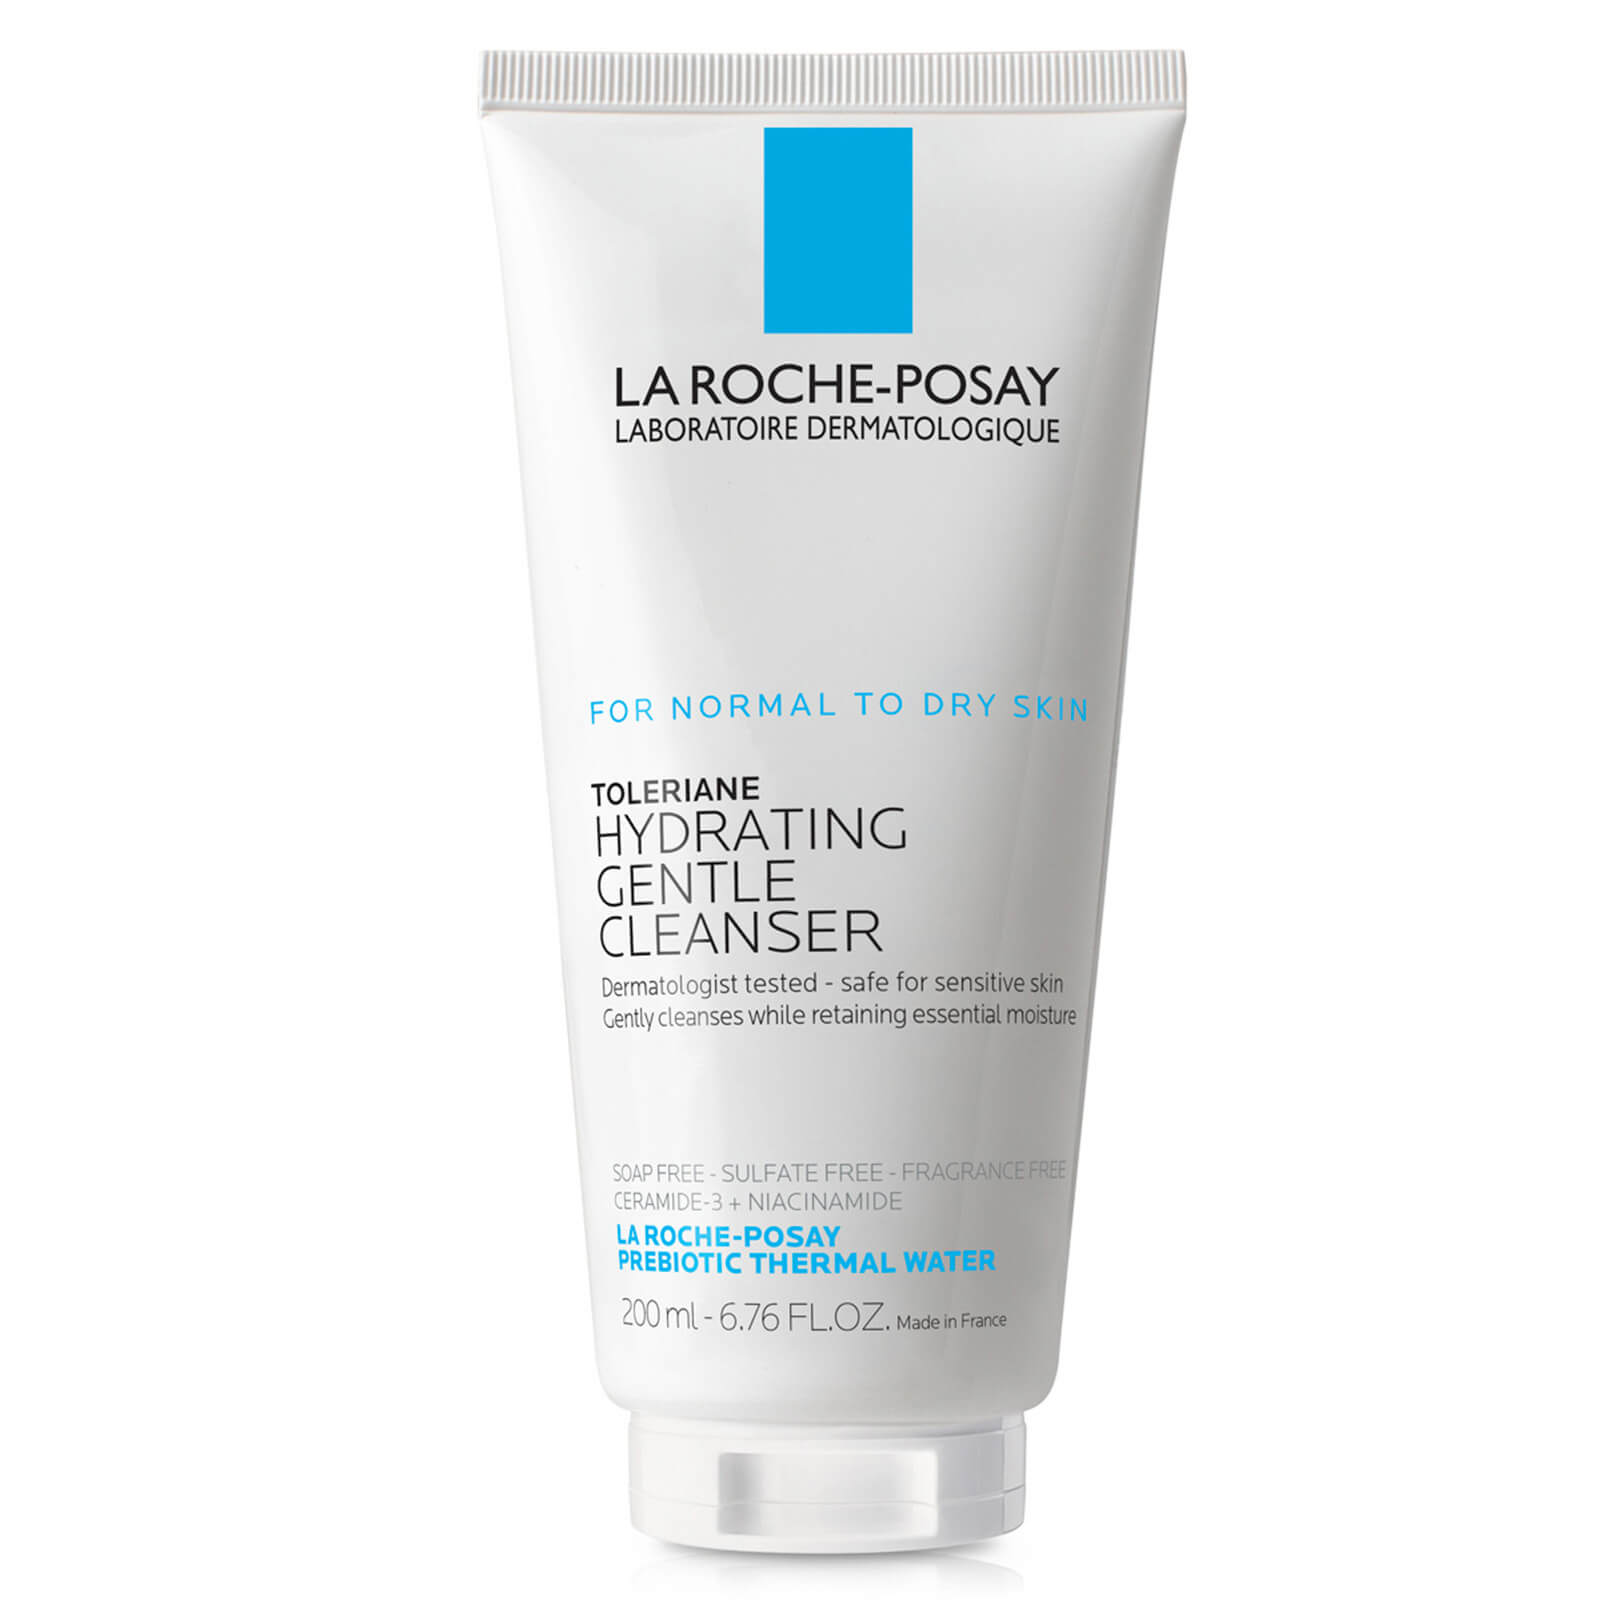 La Roche-posay Toleriane Hydrating Gentle Cleanser - 200ml